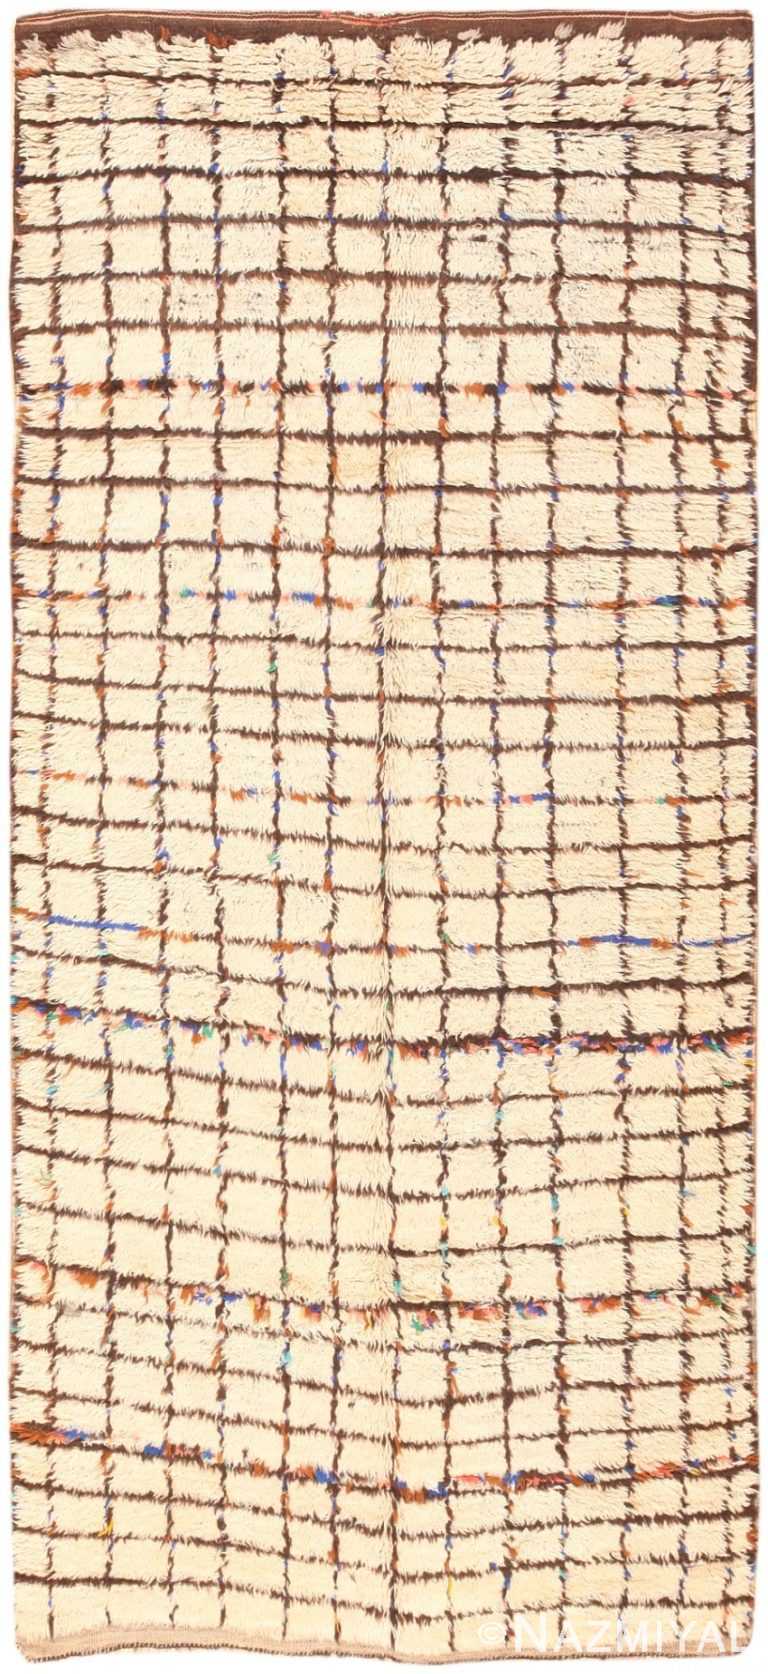 Vintage Geometric Grid Design Moroccan Berber Rug #47189 by Nazmiyal Antique Rugs